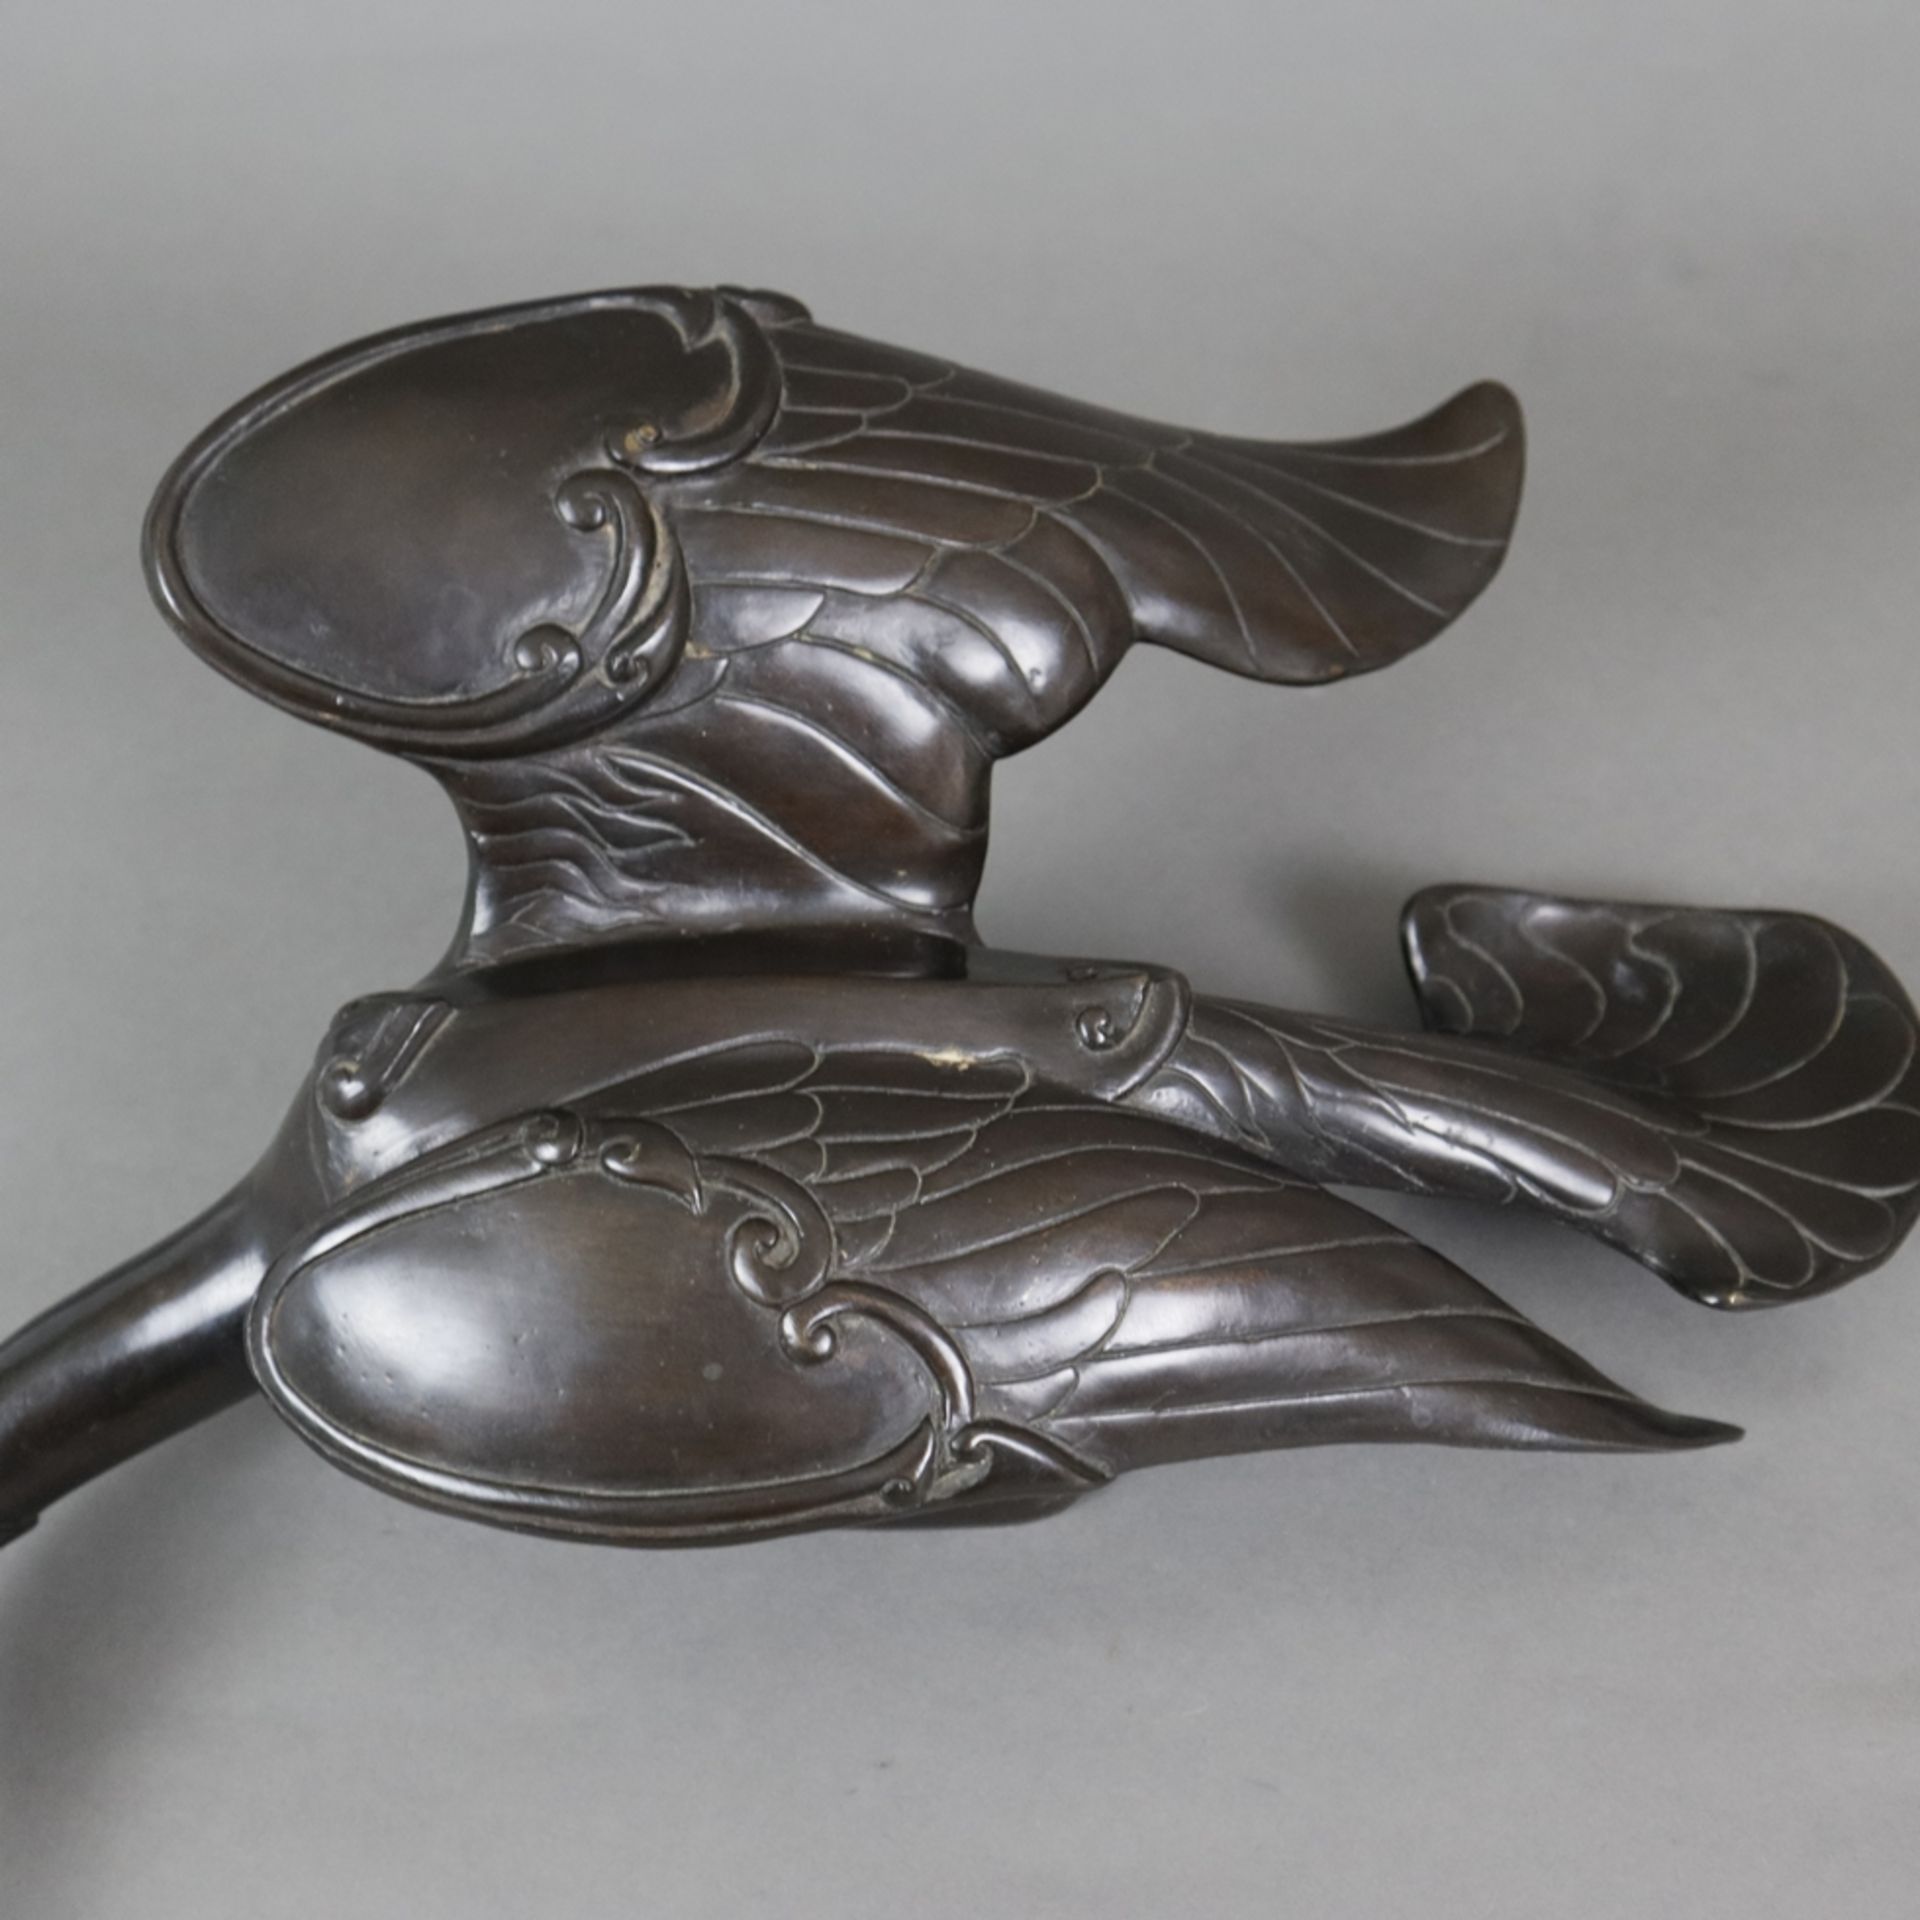 Tierfigur "Ente" - Messingguss, bronziert, unterseitig gestempelt "Santi's" mit Auflagenr. 11/5000, - Image 4 of 10